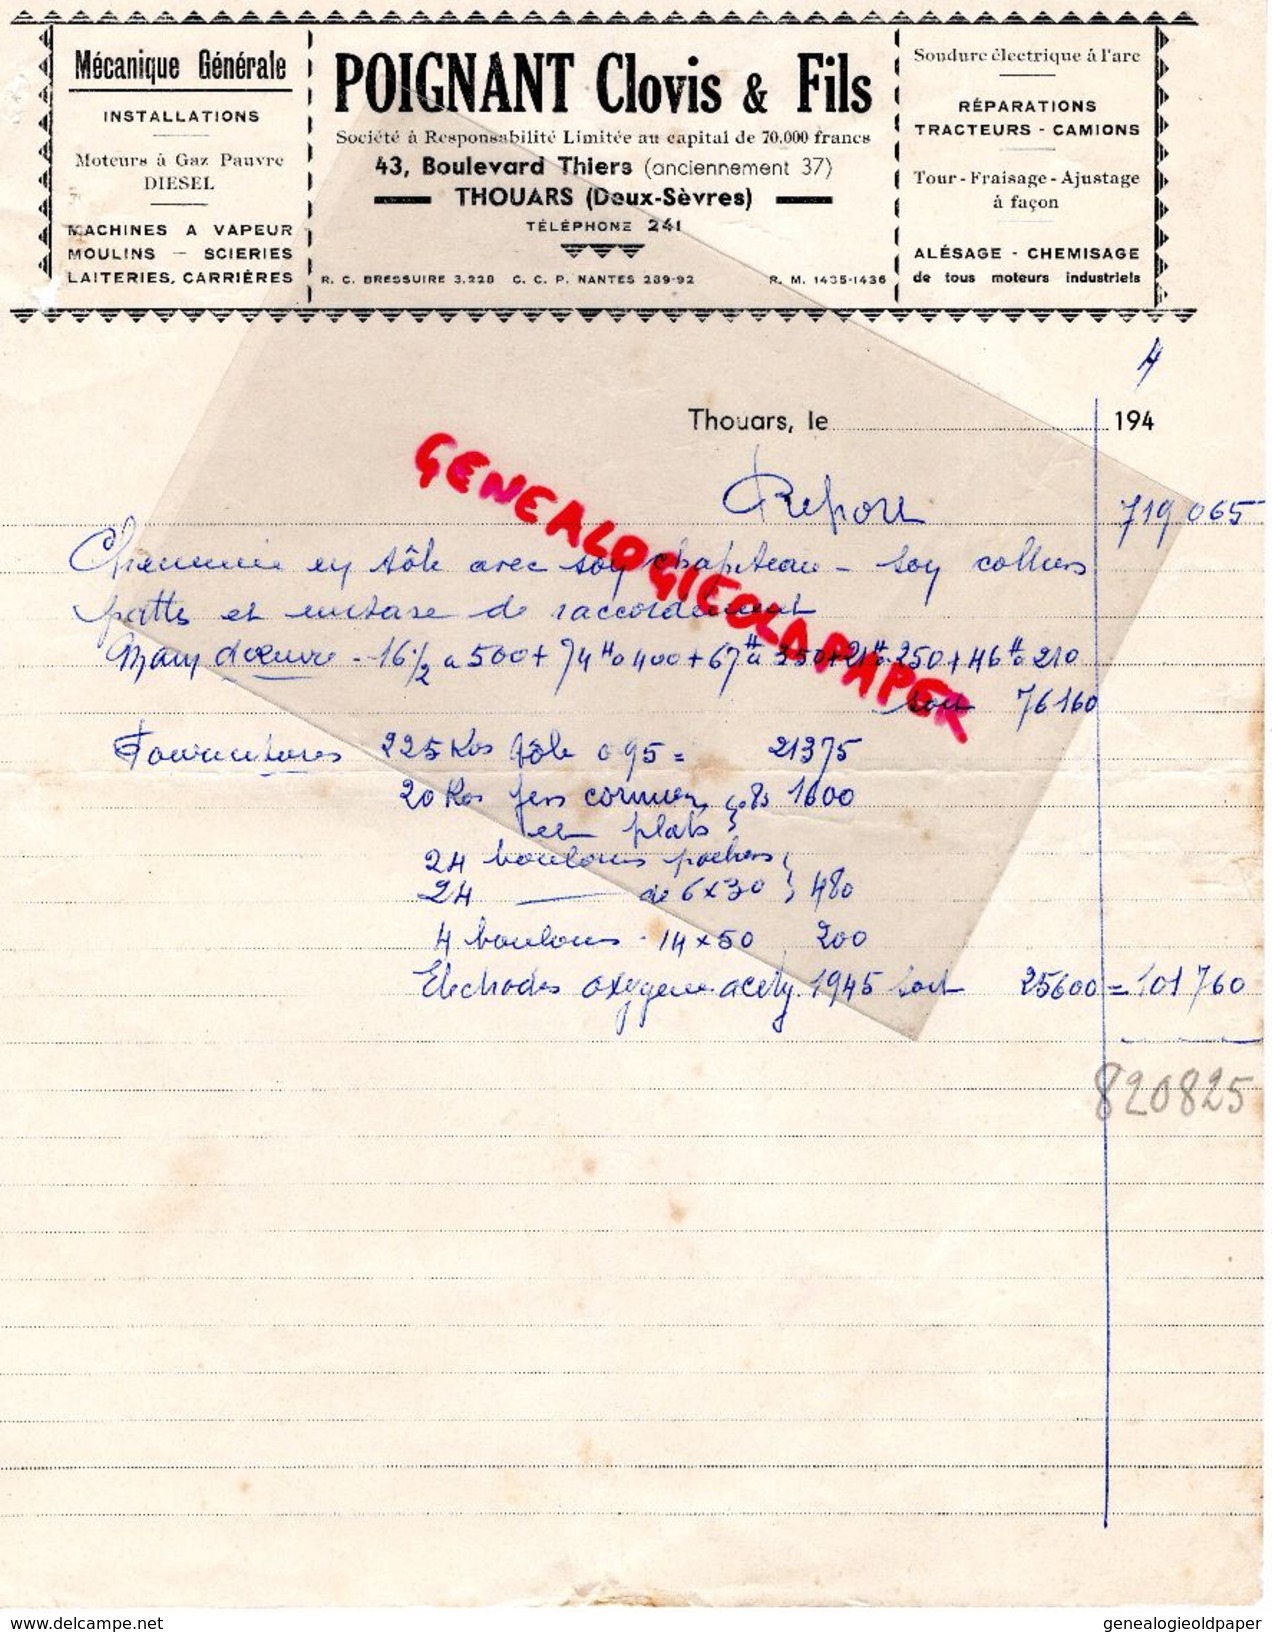 79 - THOUARS-FACTURE POIGNANT CLOVIS & FILS- MECANIQUE GENERALE-DIESEL-43 BD. THIERS- 1944 - Artesanos